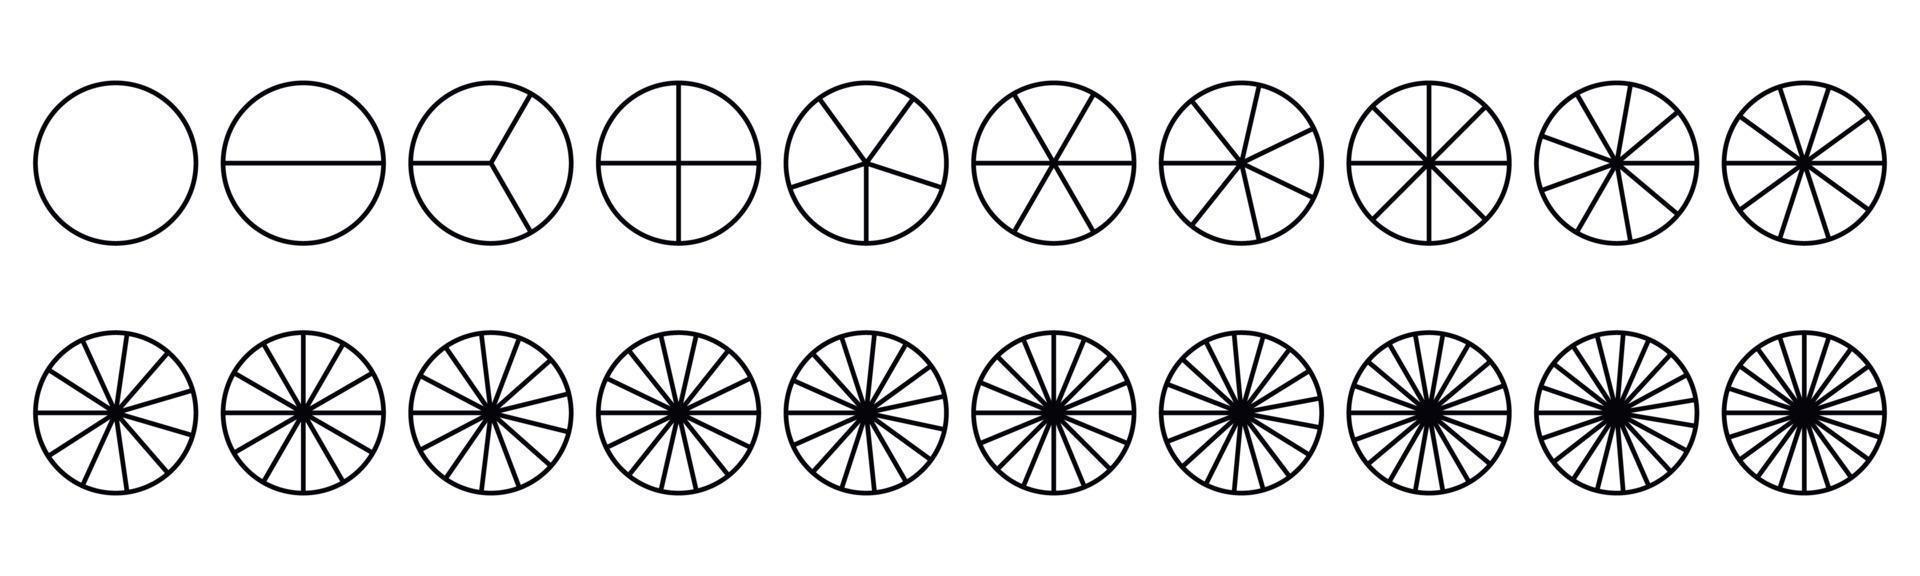 torta de frações dividida para matemática. torta de círculo com pedaços. conjunto de fatias de segmento. geometria simples. ilustração vetorial isolada vetor